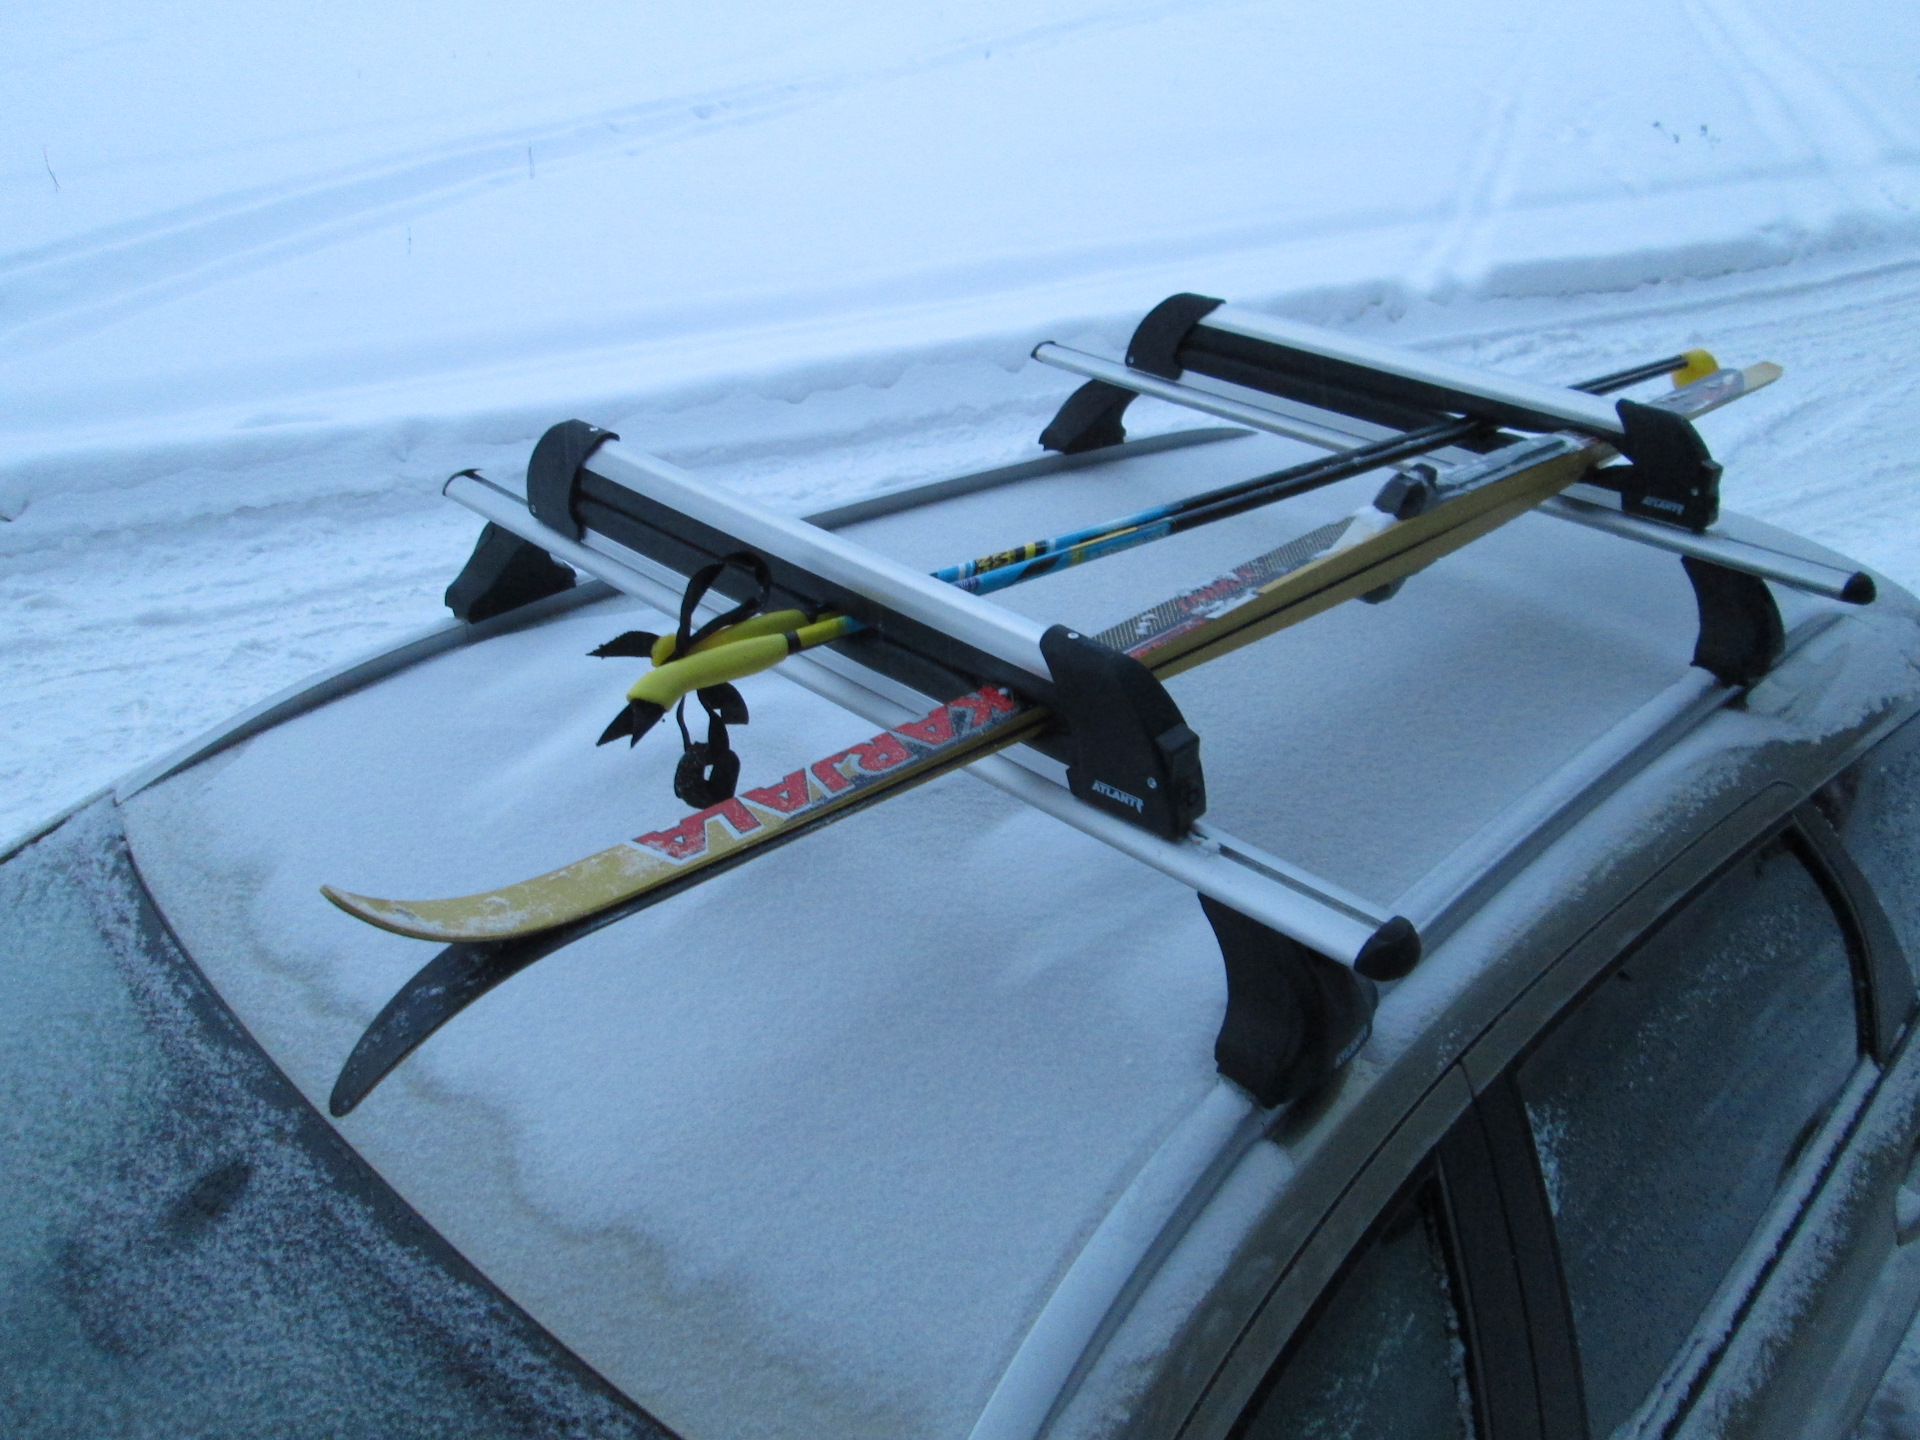 Сноуборды лыжи и палки перевозятся. 8551 Атлант. Лыжное крепление Атлант 8551. Крепление Атлант для 6-ти пар лыж или 4-х сноубордов - ATLANT 8551. Крепление для перевозки 4 пар лыж ATLANT 8550.